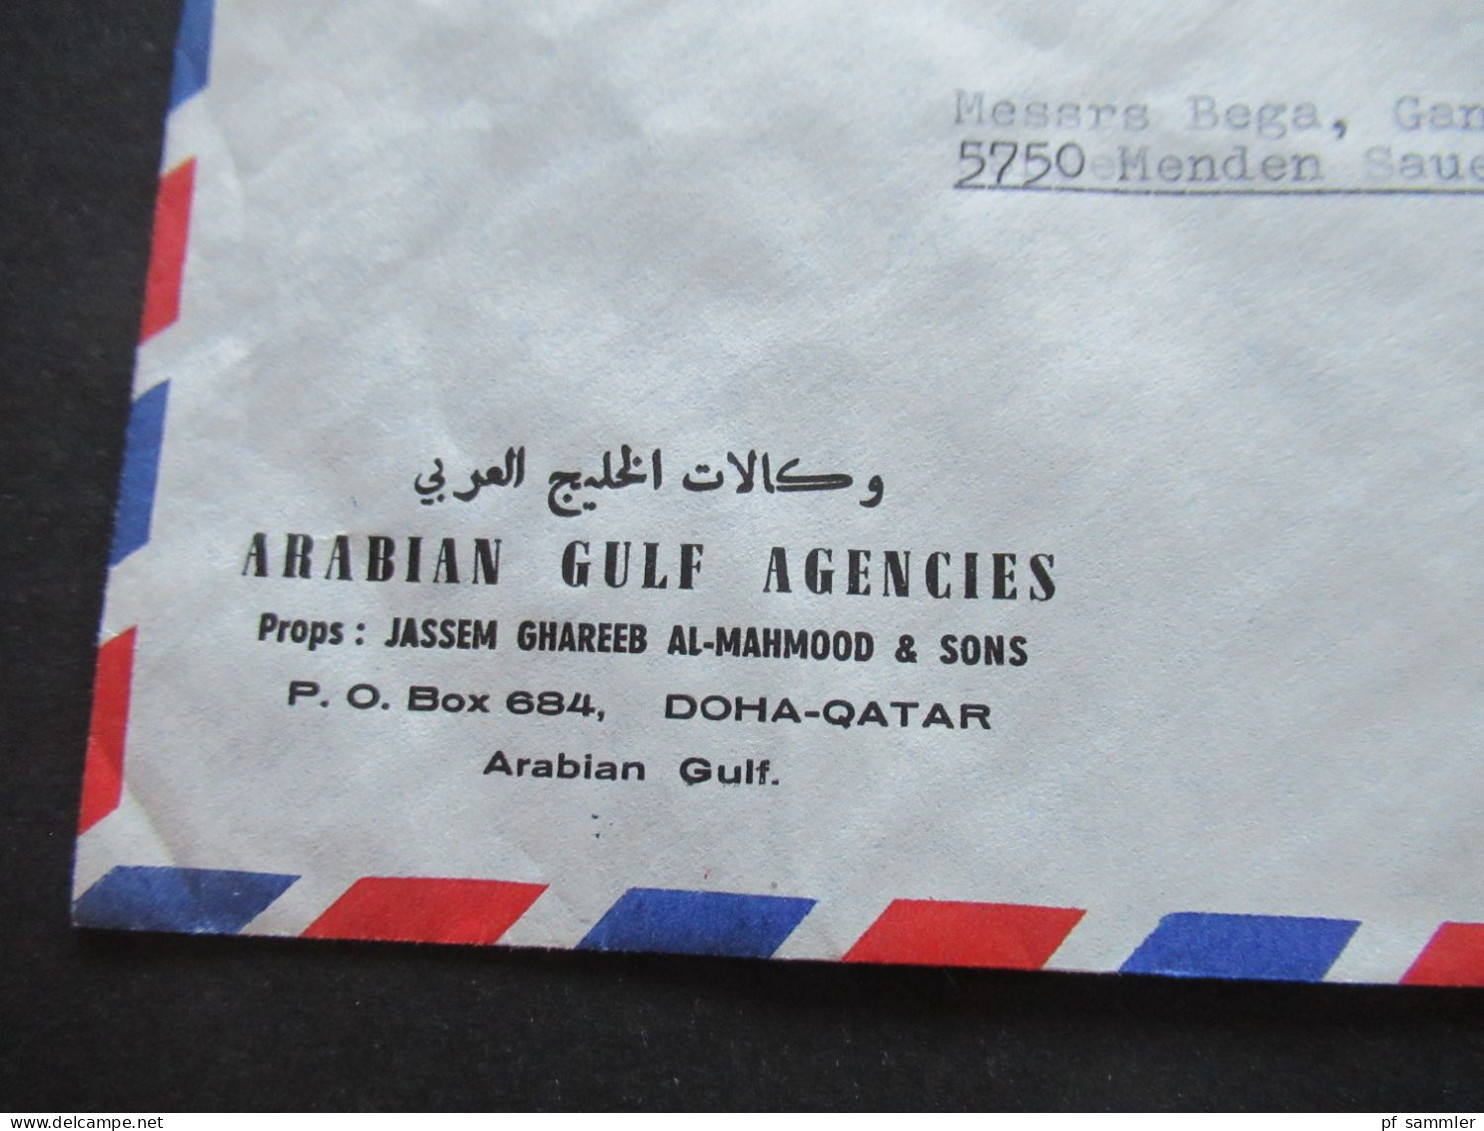 Asien Qatar Um 1965 Air Mail / Luftpost Firmenumschlag Arabian Gulf Agencies Jassem Ghareeb Al-Mahmood & Sons Doha Qatar - Qatar